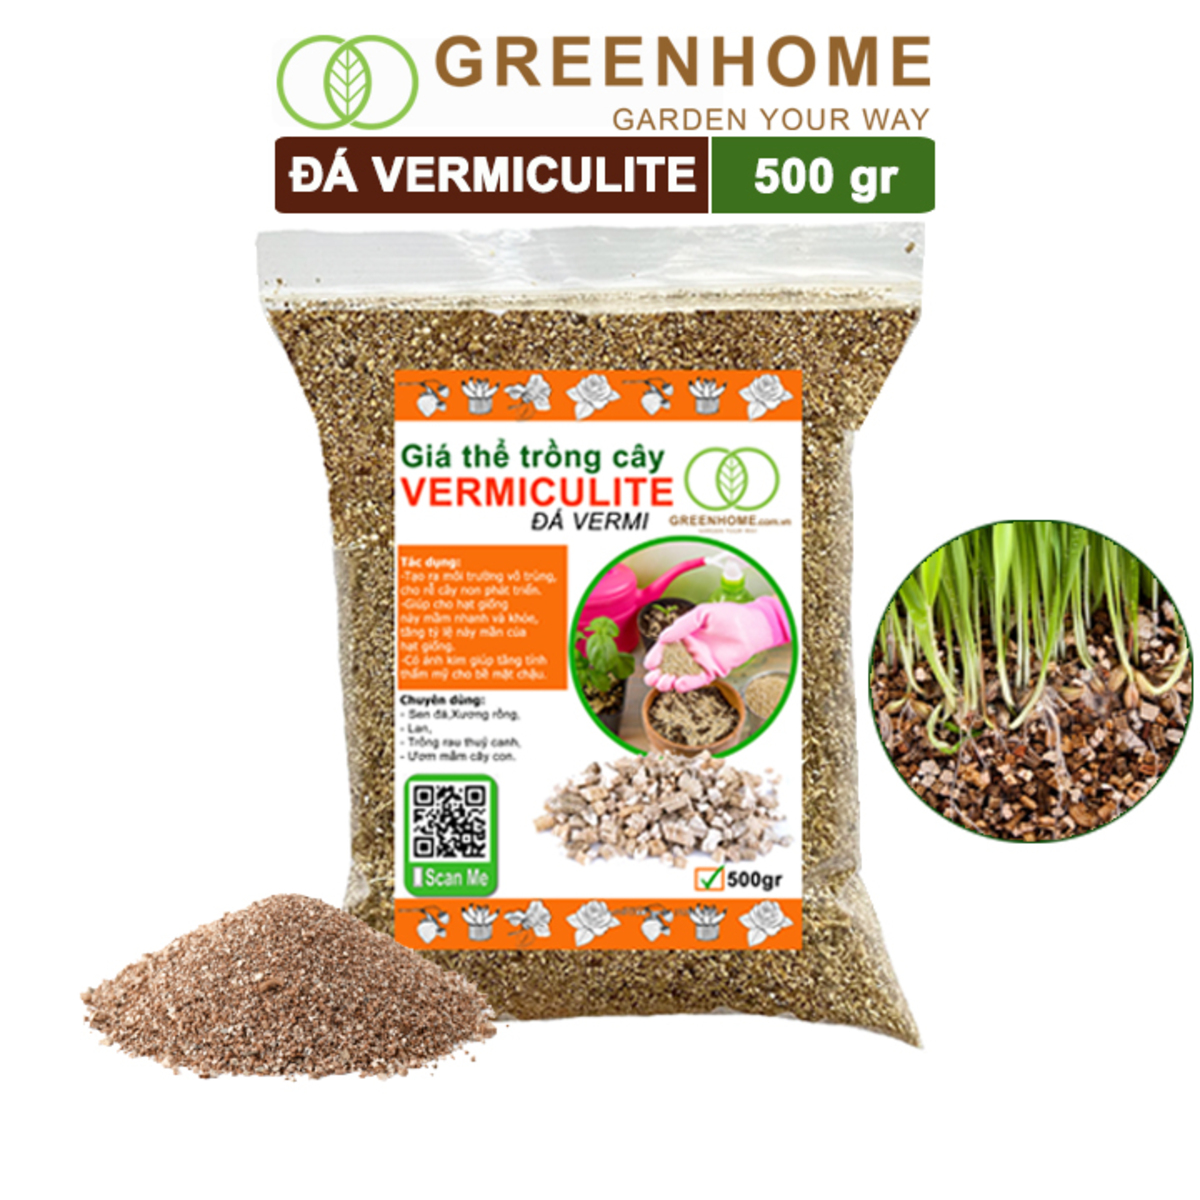 Đá Vermiculite (vơ mi), bao 500gr, ươm hạt giống, trồng rau mầm, đất hoa hồng, sen đá, thuỷ canh |Greenhome